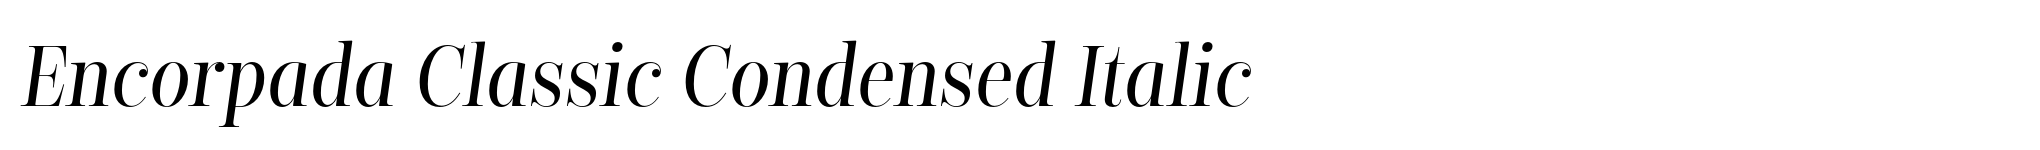 Encorpada Classic Condensed Italic image